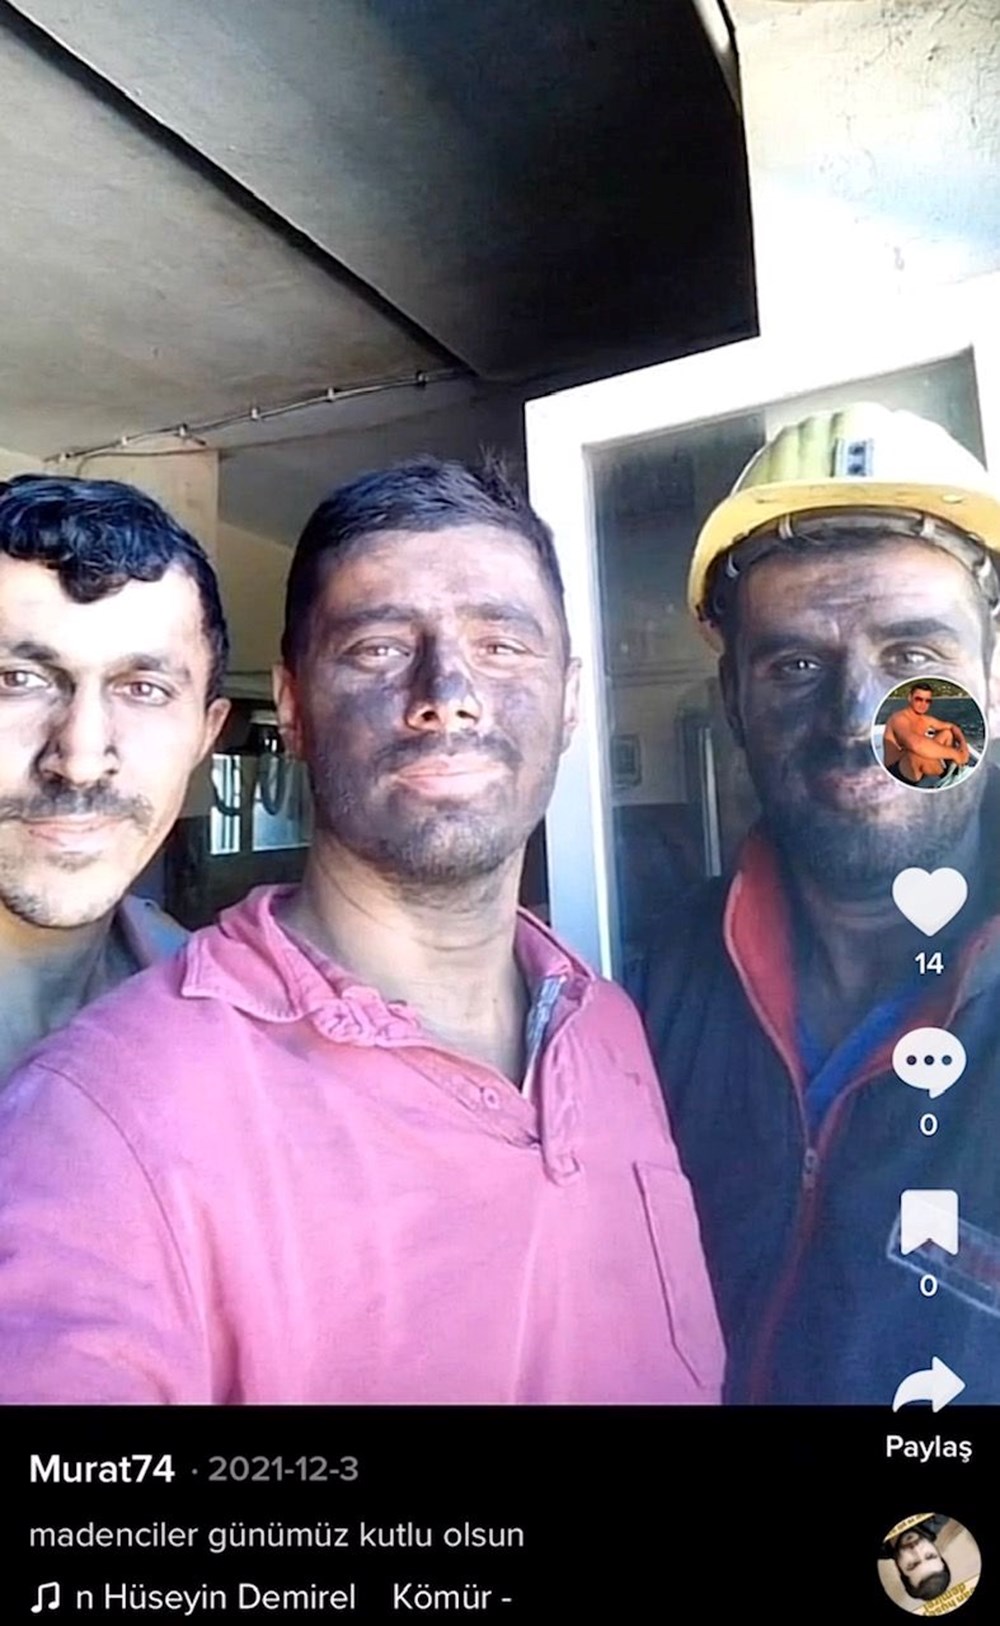 Hayatını kaybeden madencilerin son fotoğrafları - 17